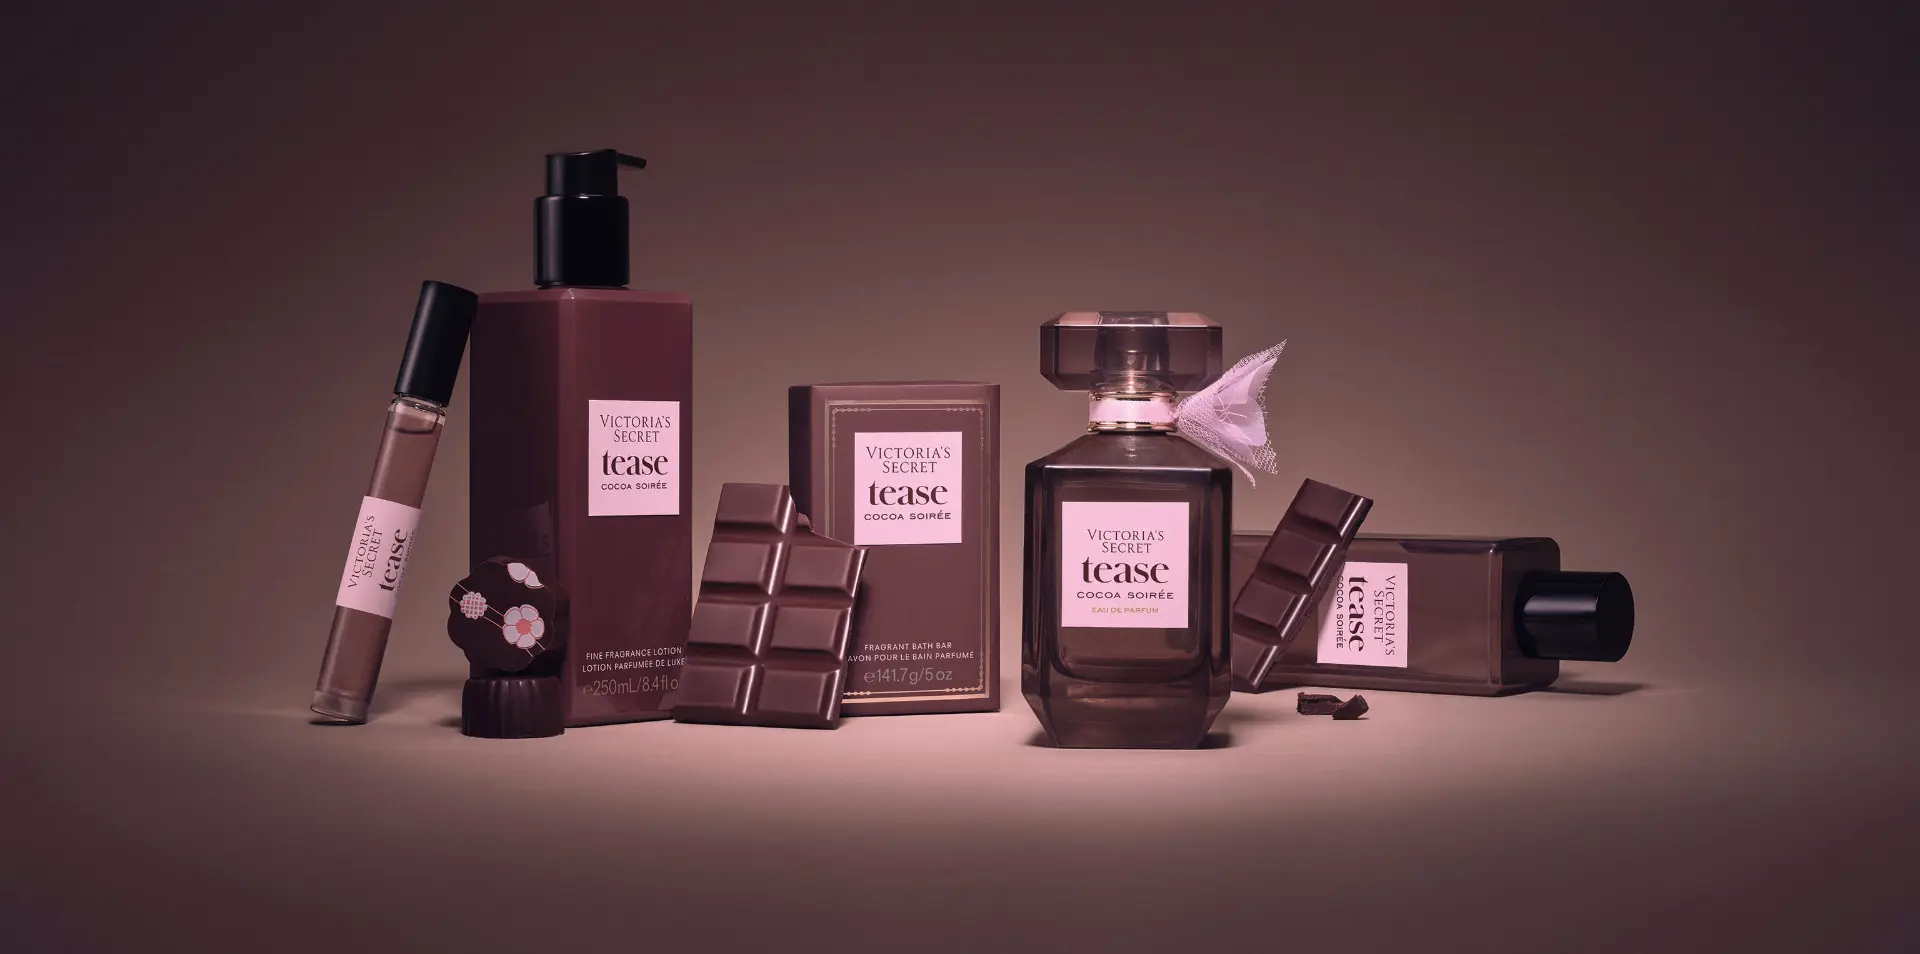 Así es Tease Cocoa Soirée el nuevo perfume de Victoria’s Secret